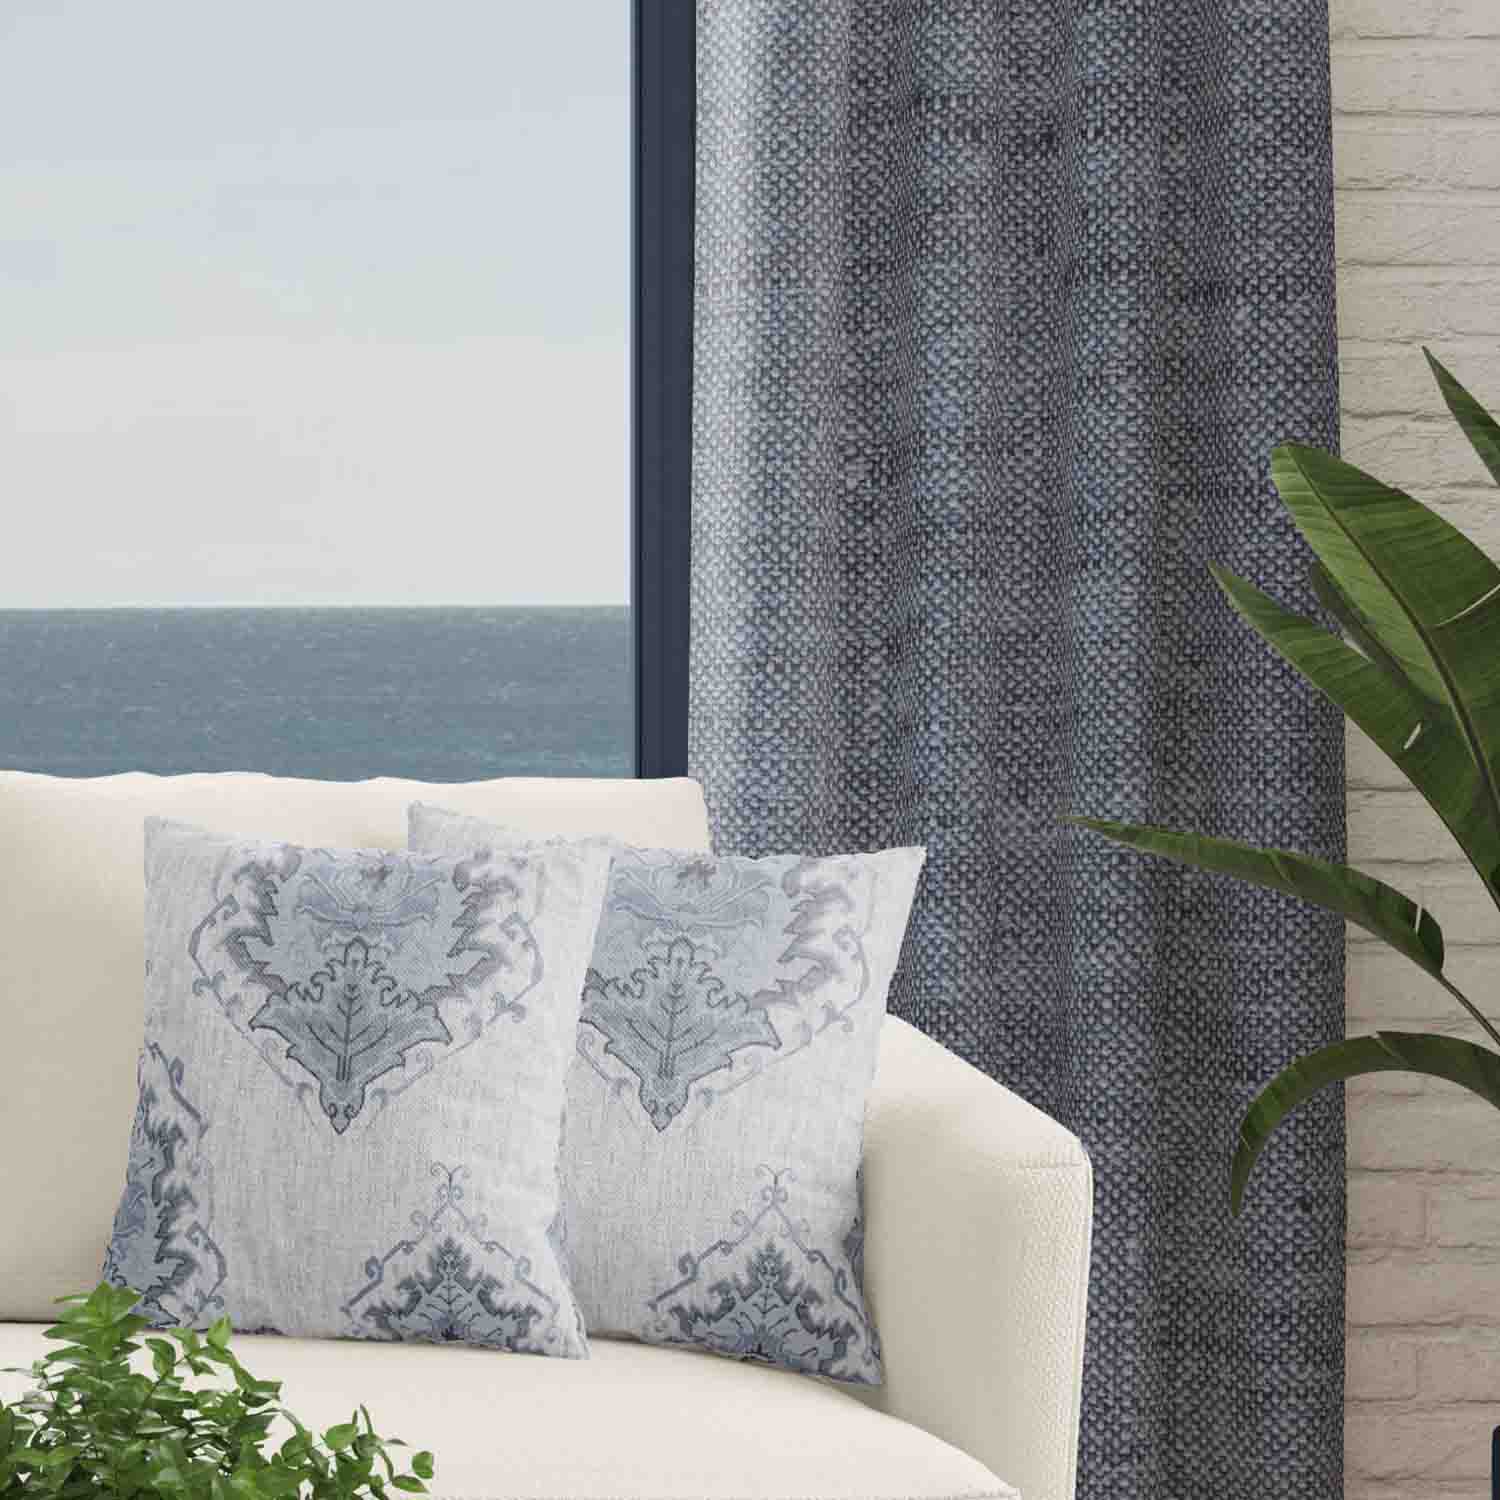 Decorator's Favorite Navy Drapery & Pillow Bundles - Gemma Navy Blue/Light Blue & Dark Blue Denim Indigo Textured Linen Curtain Pair with Pair Mia Linen Pillows